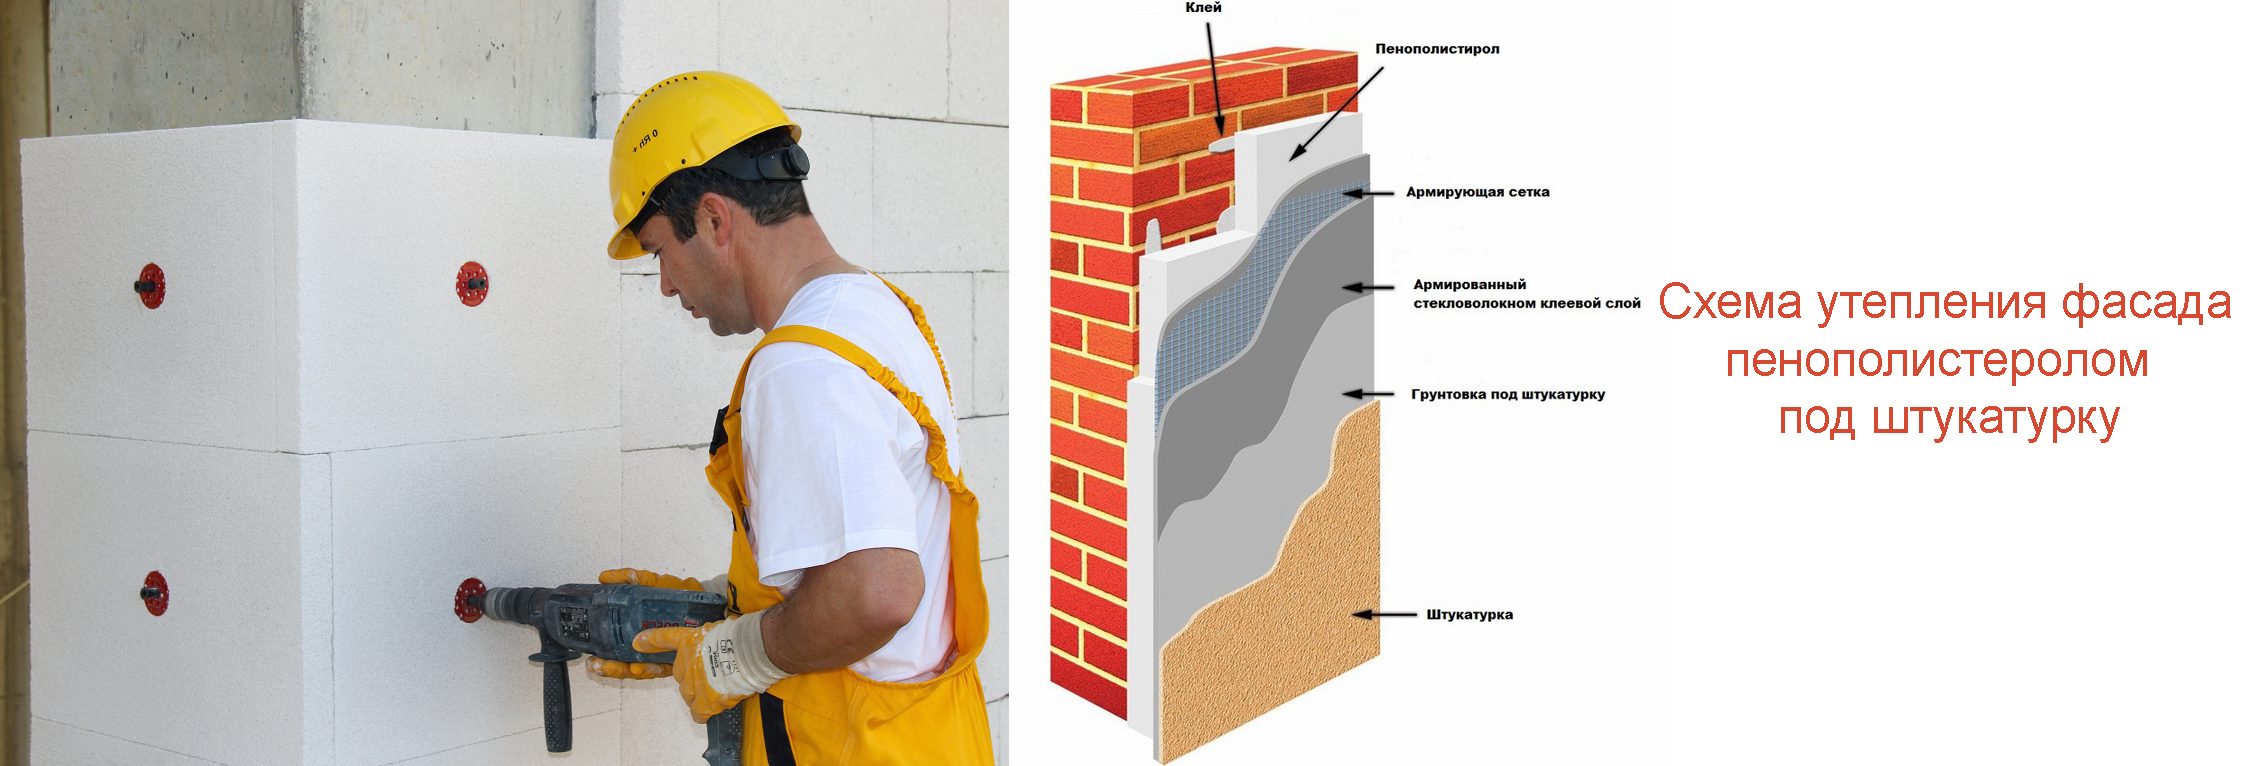 Утепление стен снаружи пенопластом: подробная пошаговая инструкция + фото